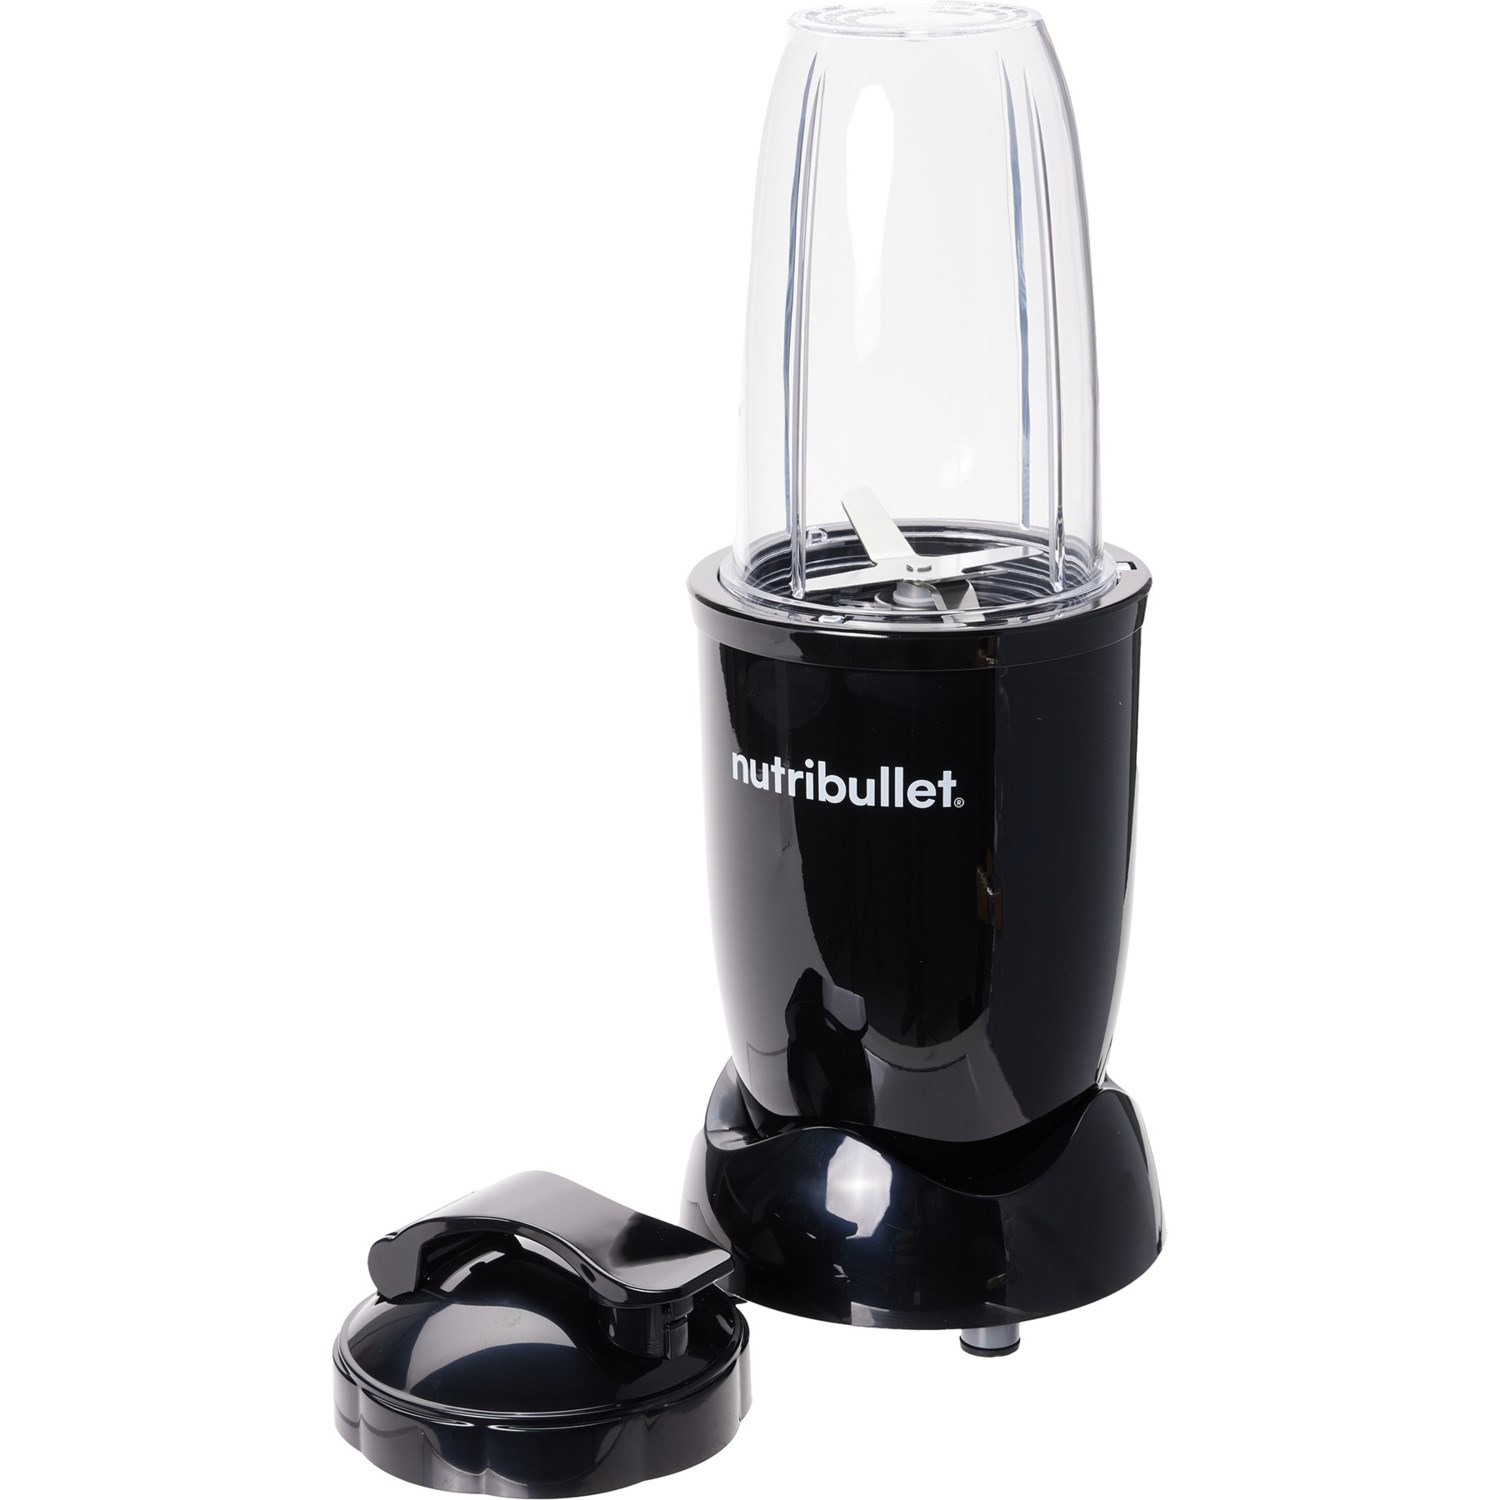 Nutribullet Blender Black - Personal Blender